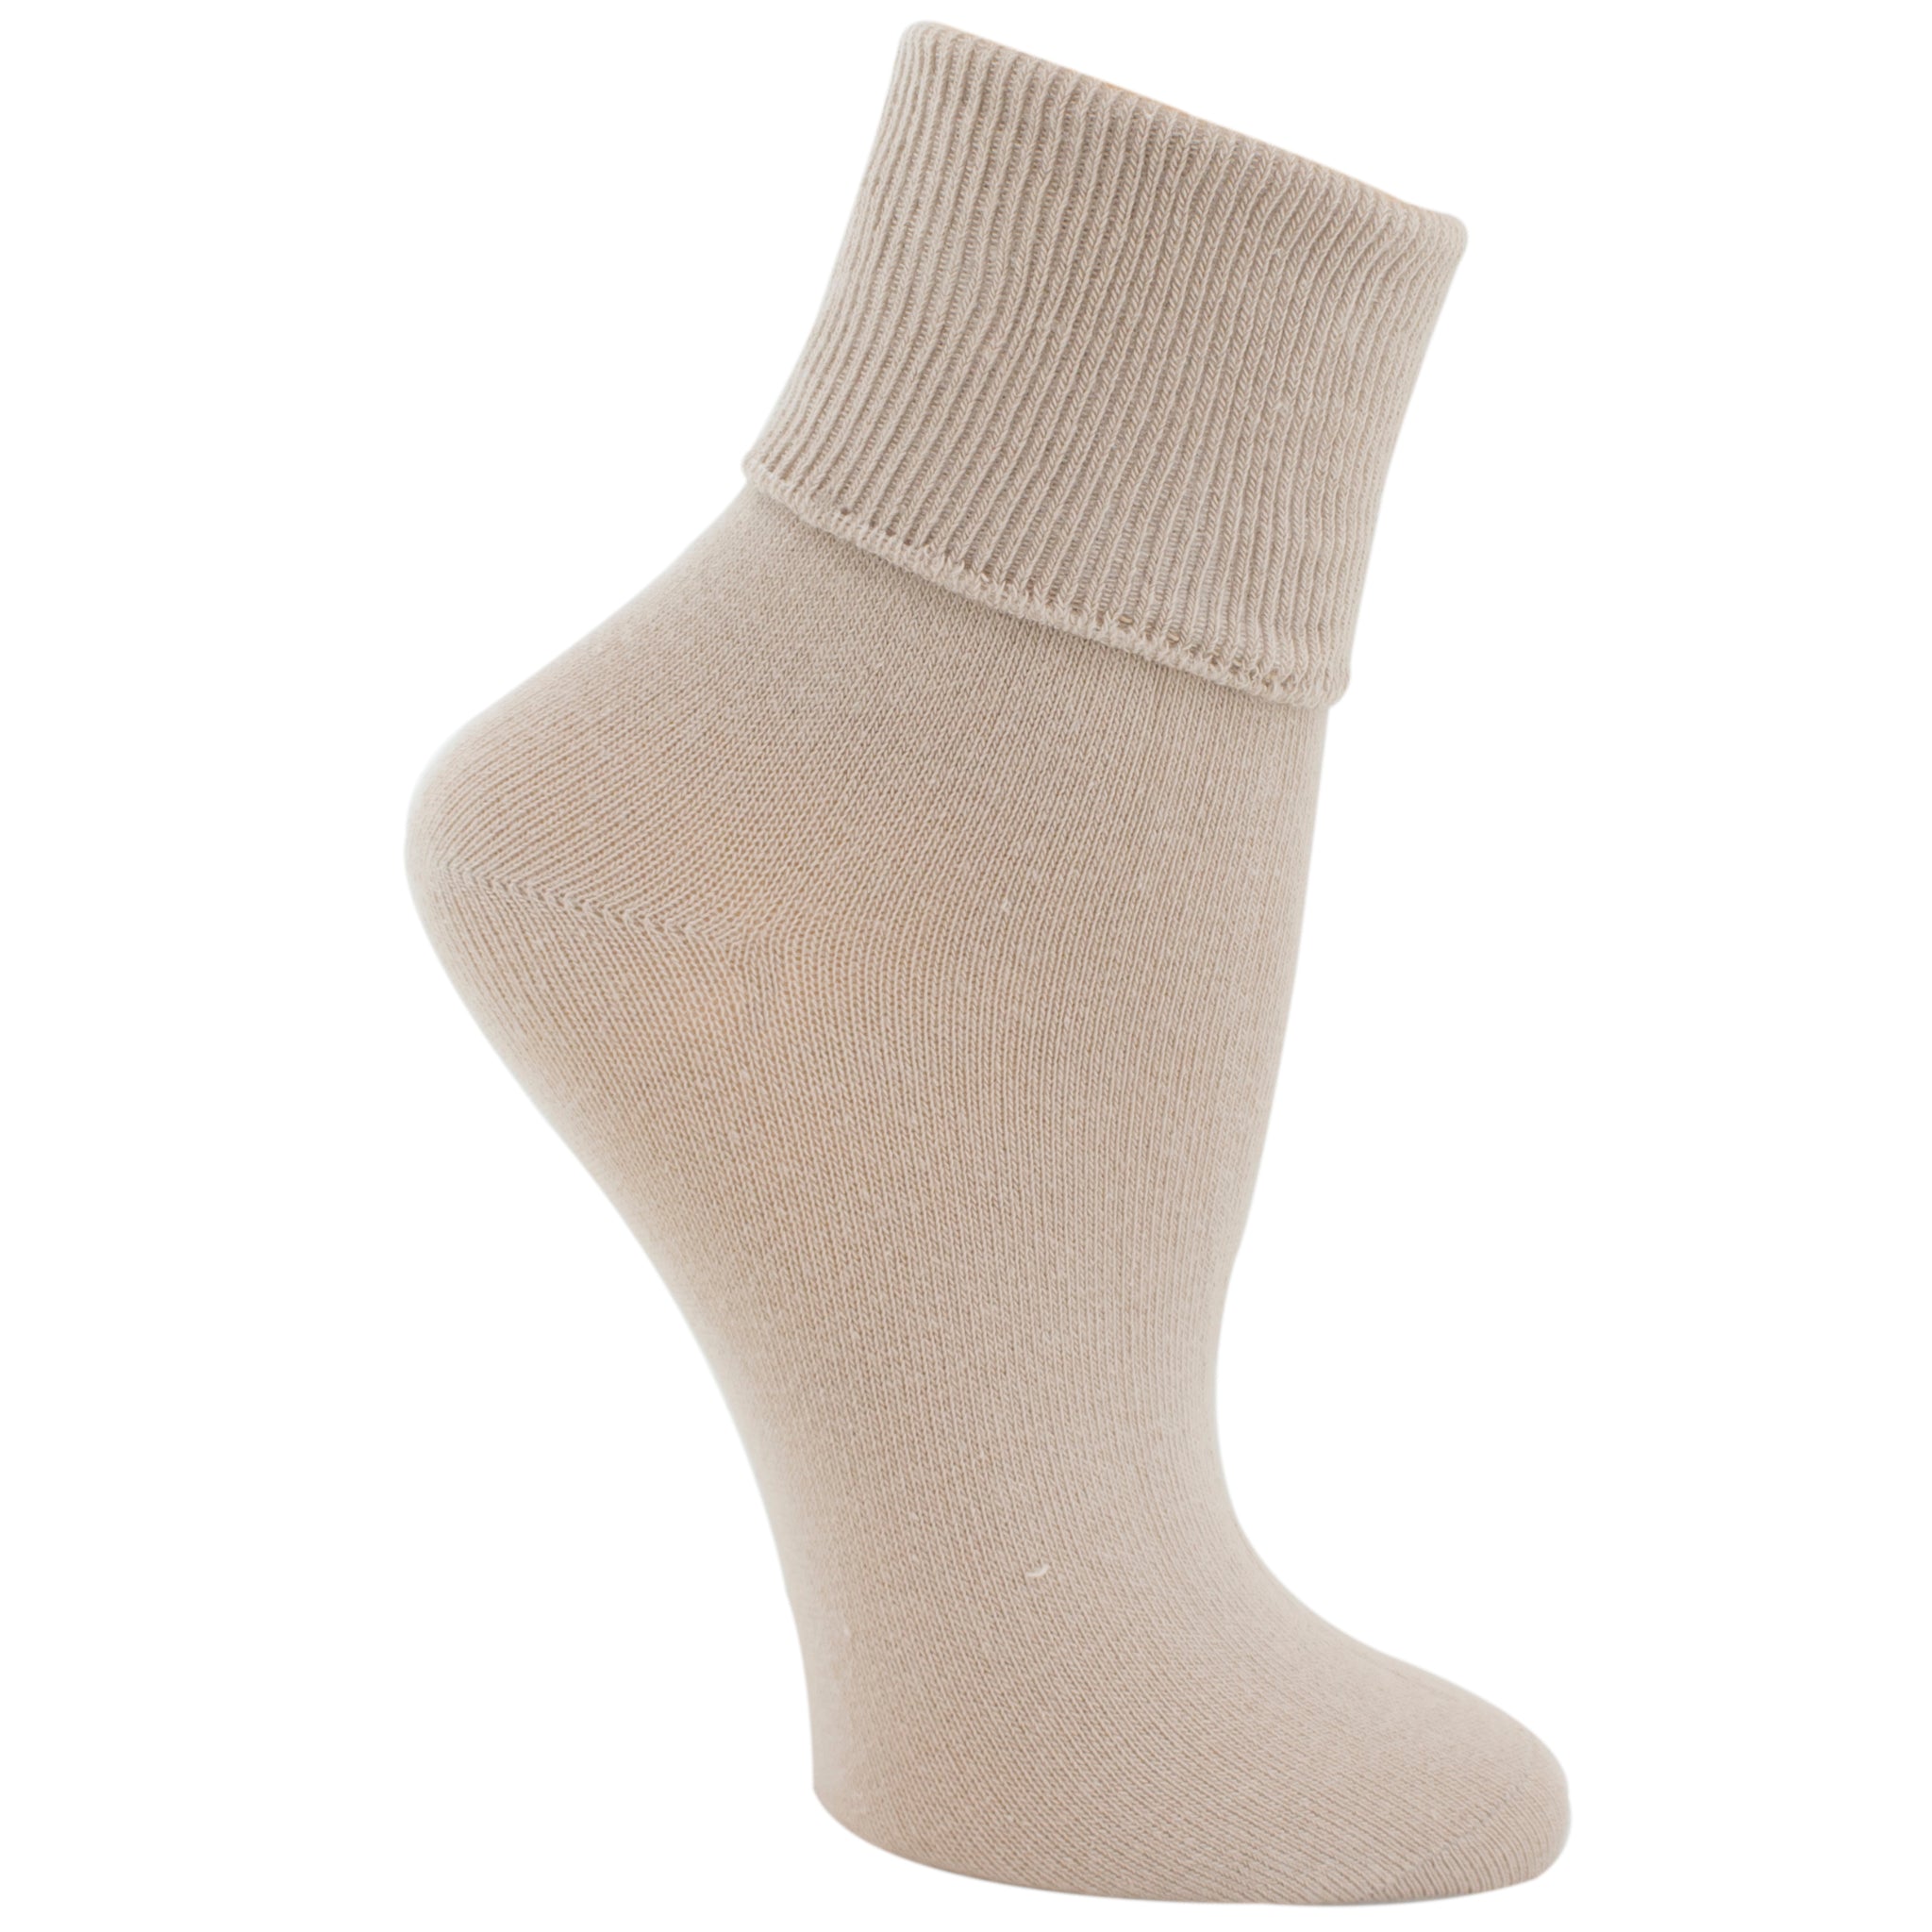 Jefferies Women's Turn Cuff Socks 2200 – Good's Store Online